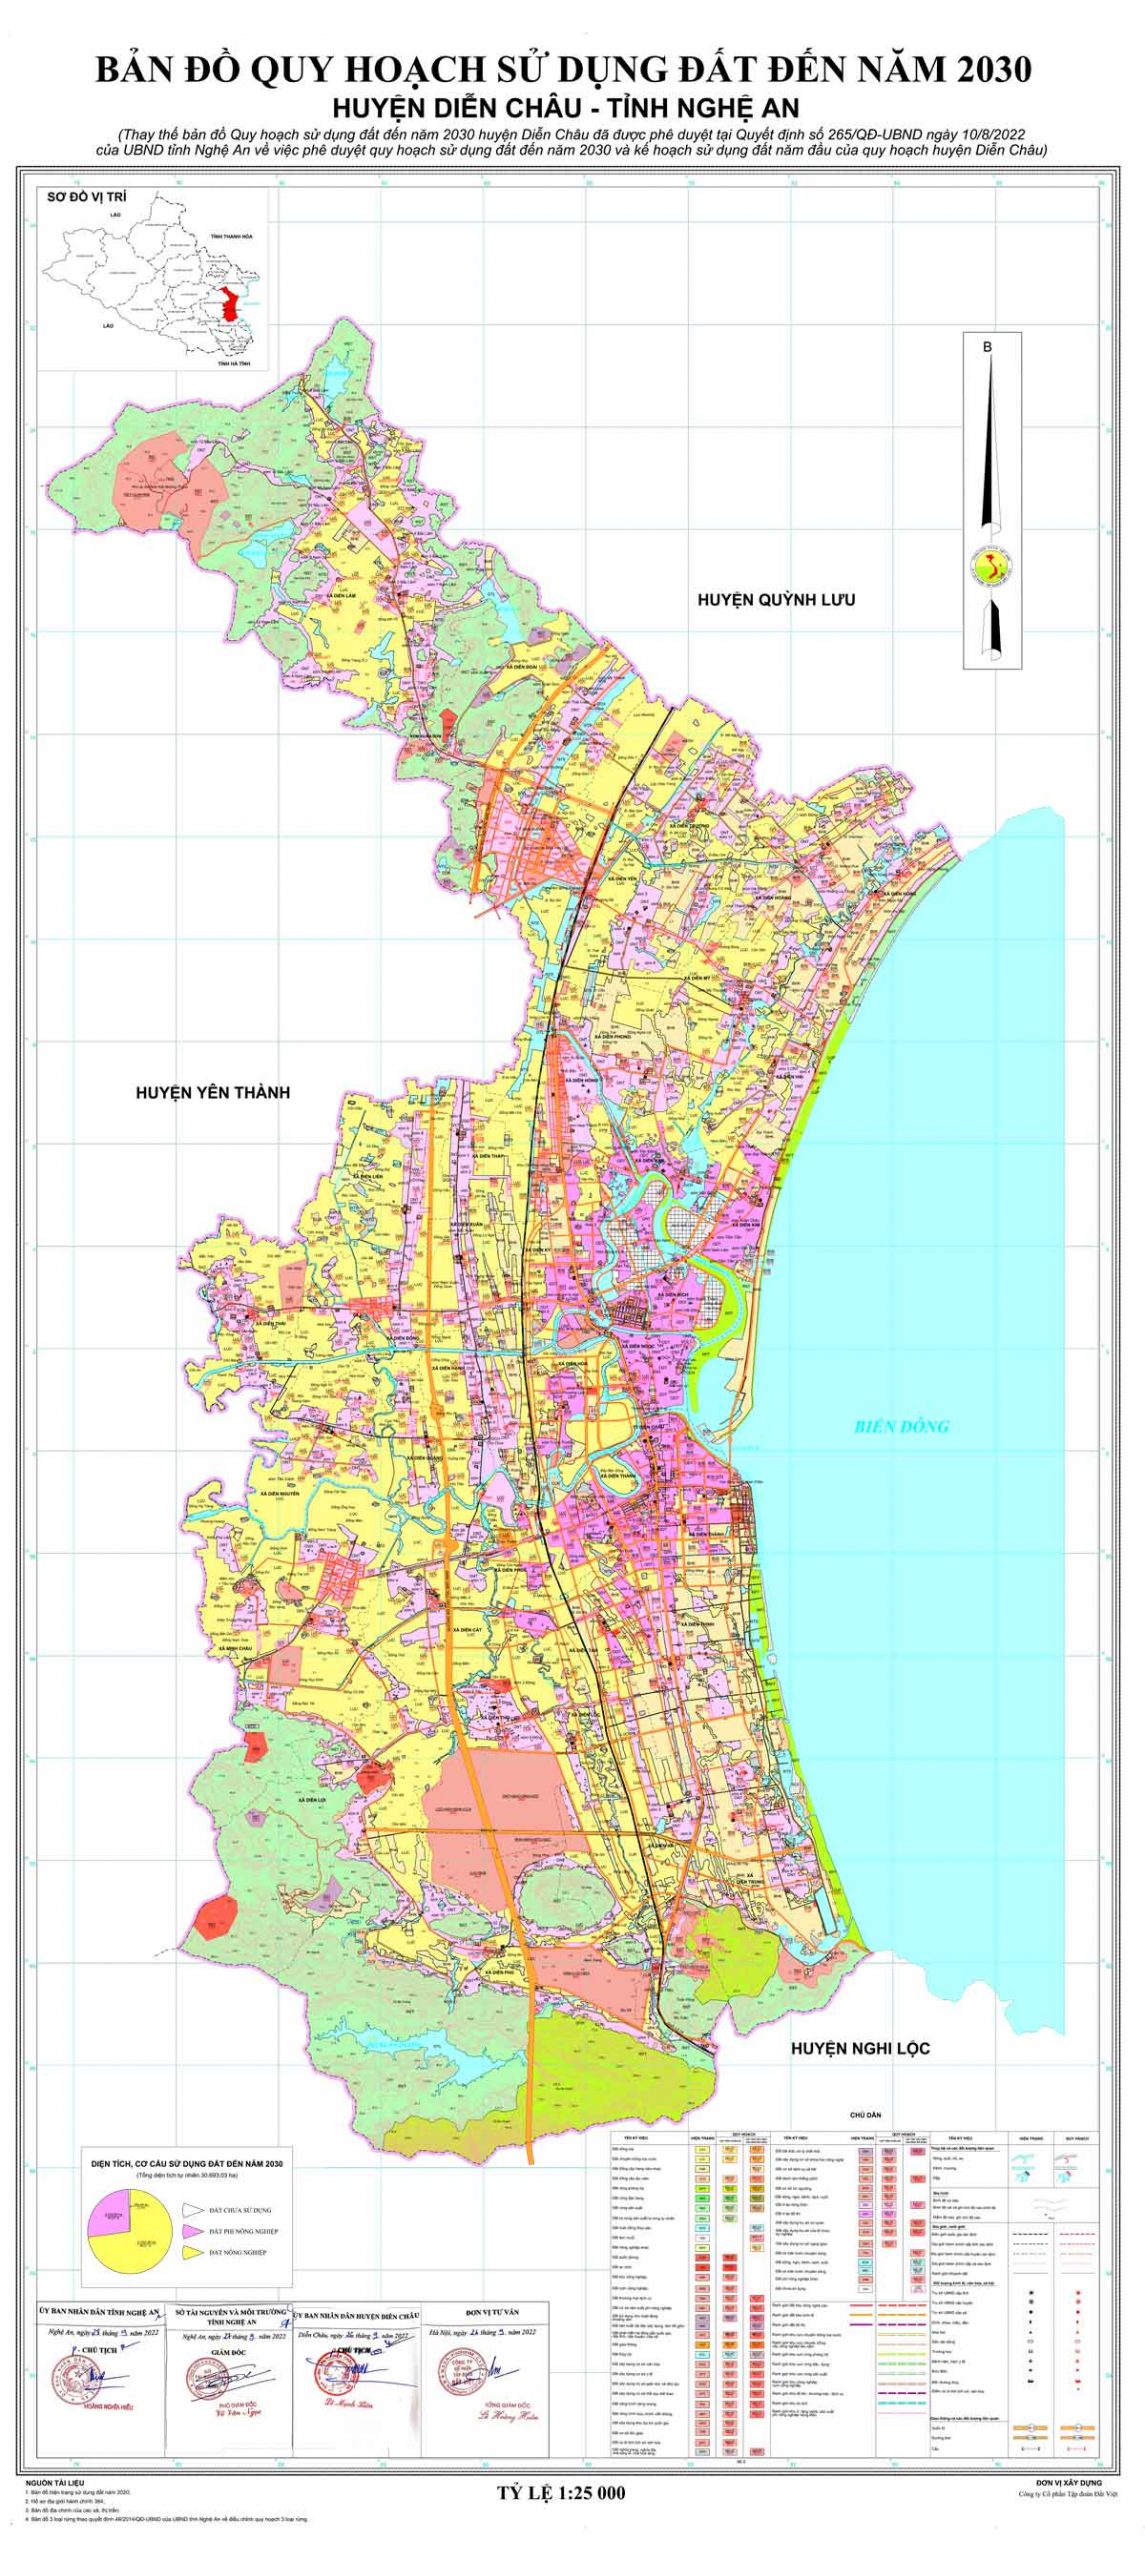 Bản đồ QHSDĐ huyện Diễn Châu đến năm 2030